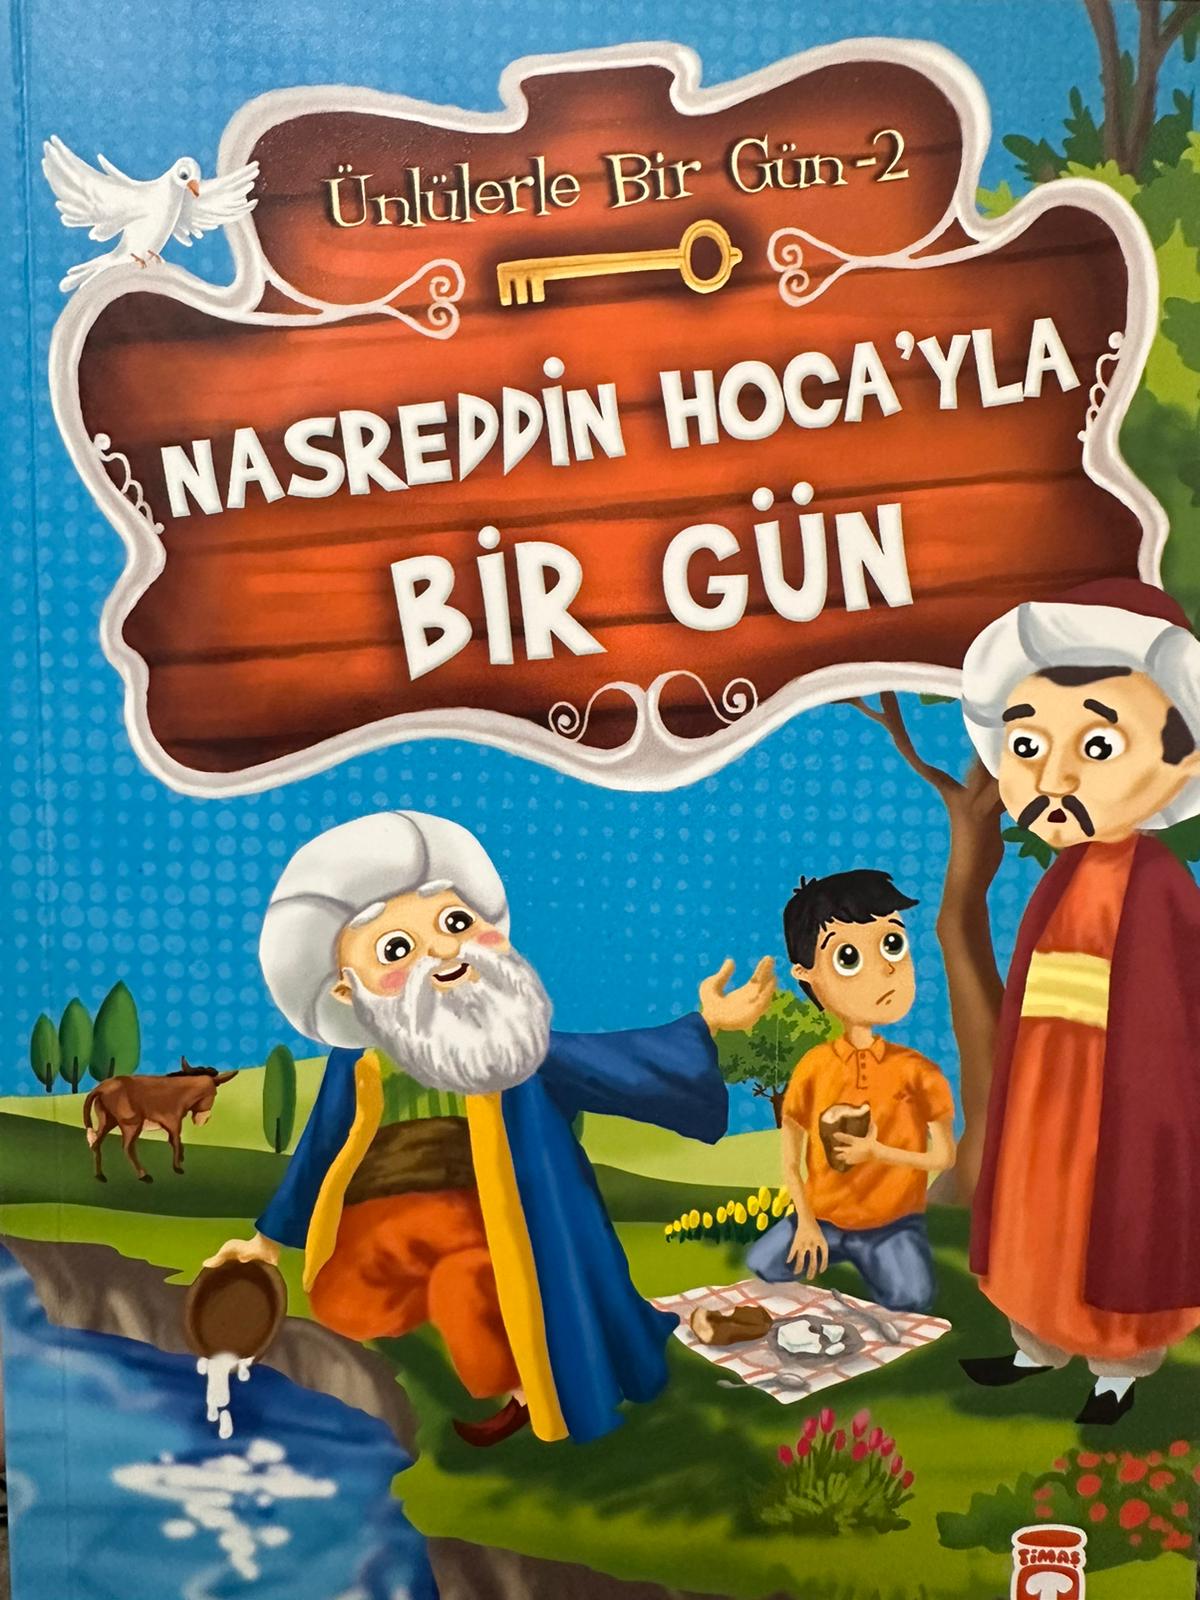 Nasreddin Hoca'yla Bir Gün